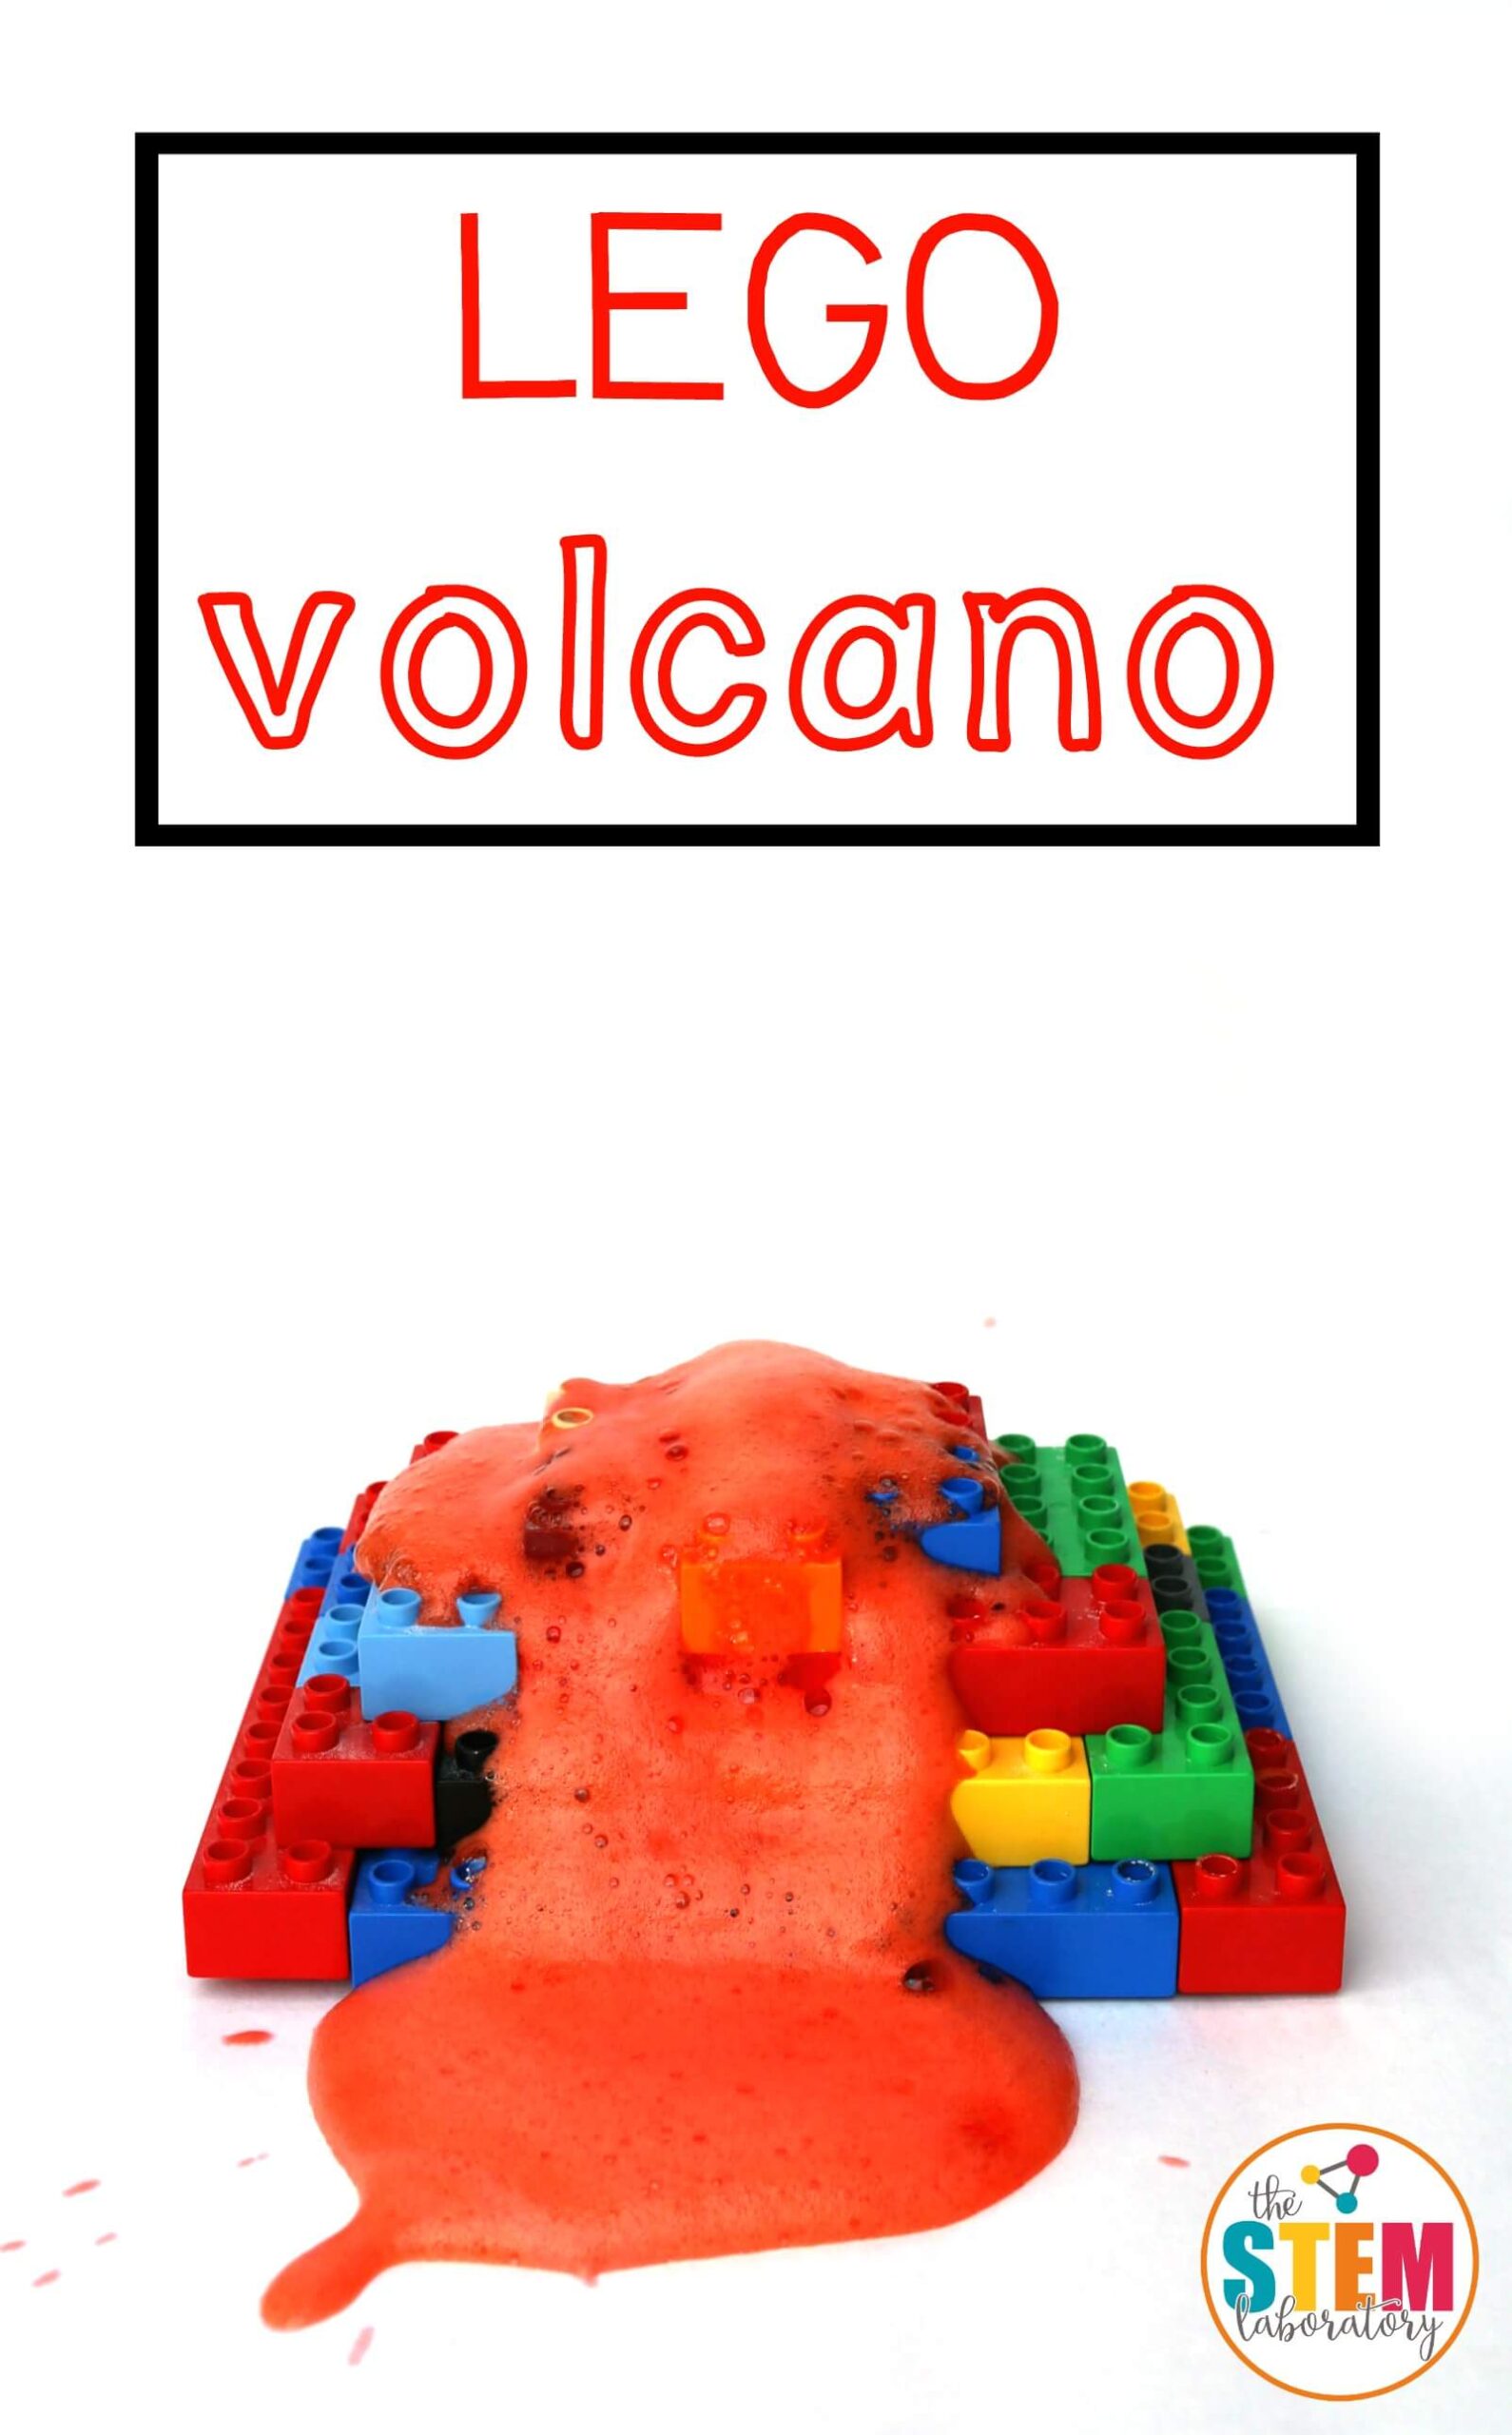 LEGO Volcano